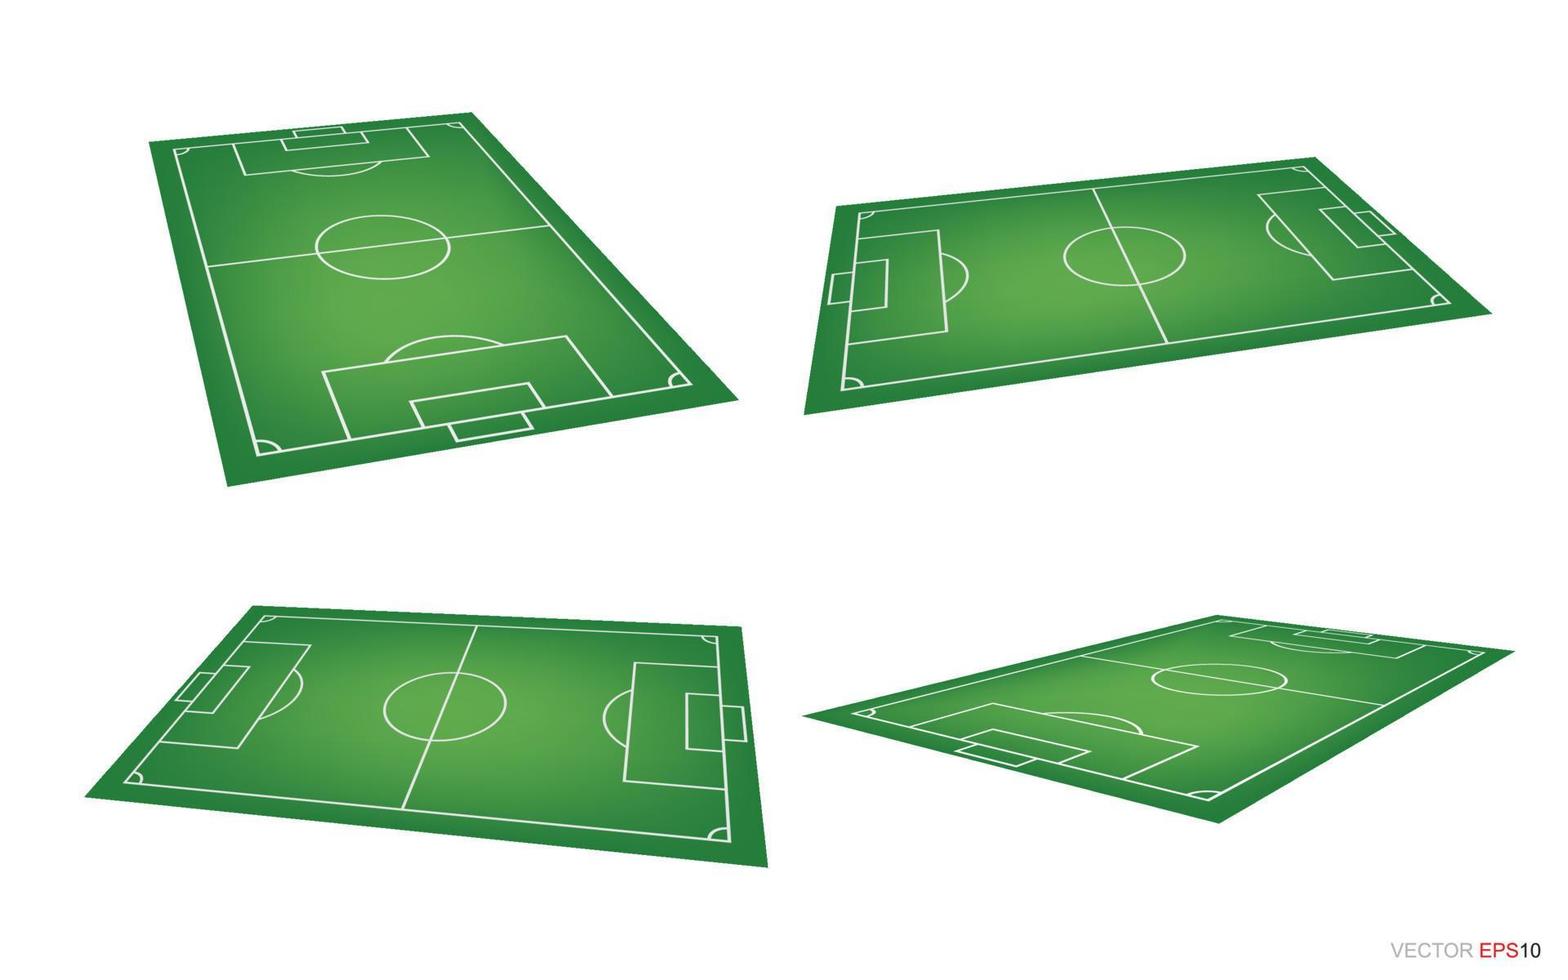 voetbalveld of voetbalveld achtergrond geïsoleerd op wit. perspectief elementen. vector groene rechtbank voor het maken van voetbalspel. vector.